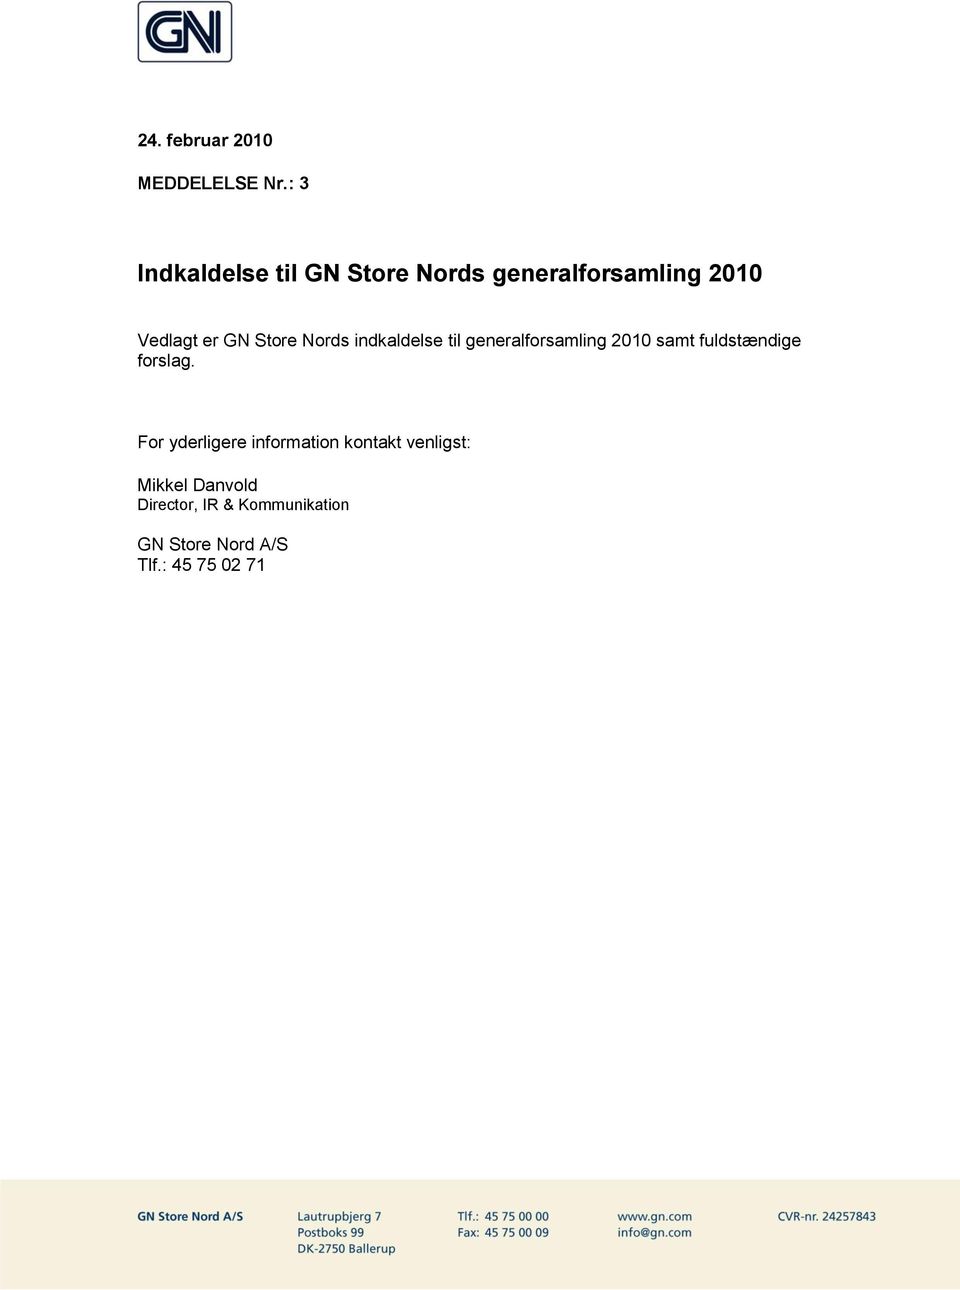 Store Nords indkaldelse til generalforsamling 2010 samt fuldstændige forslag.